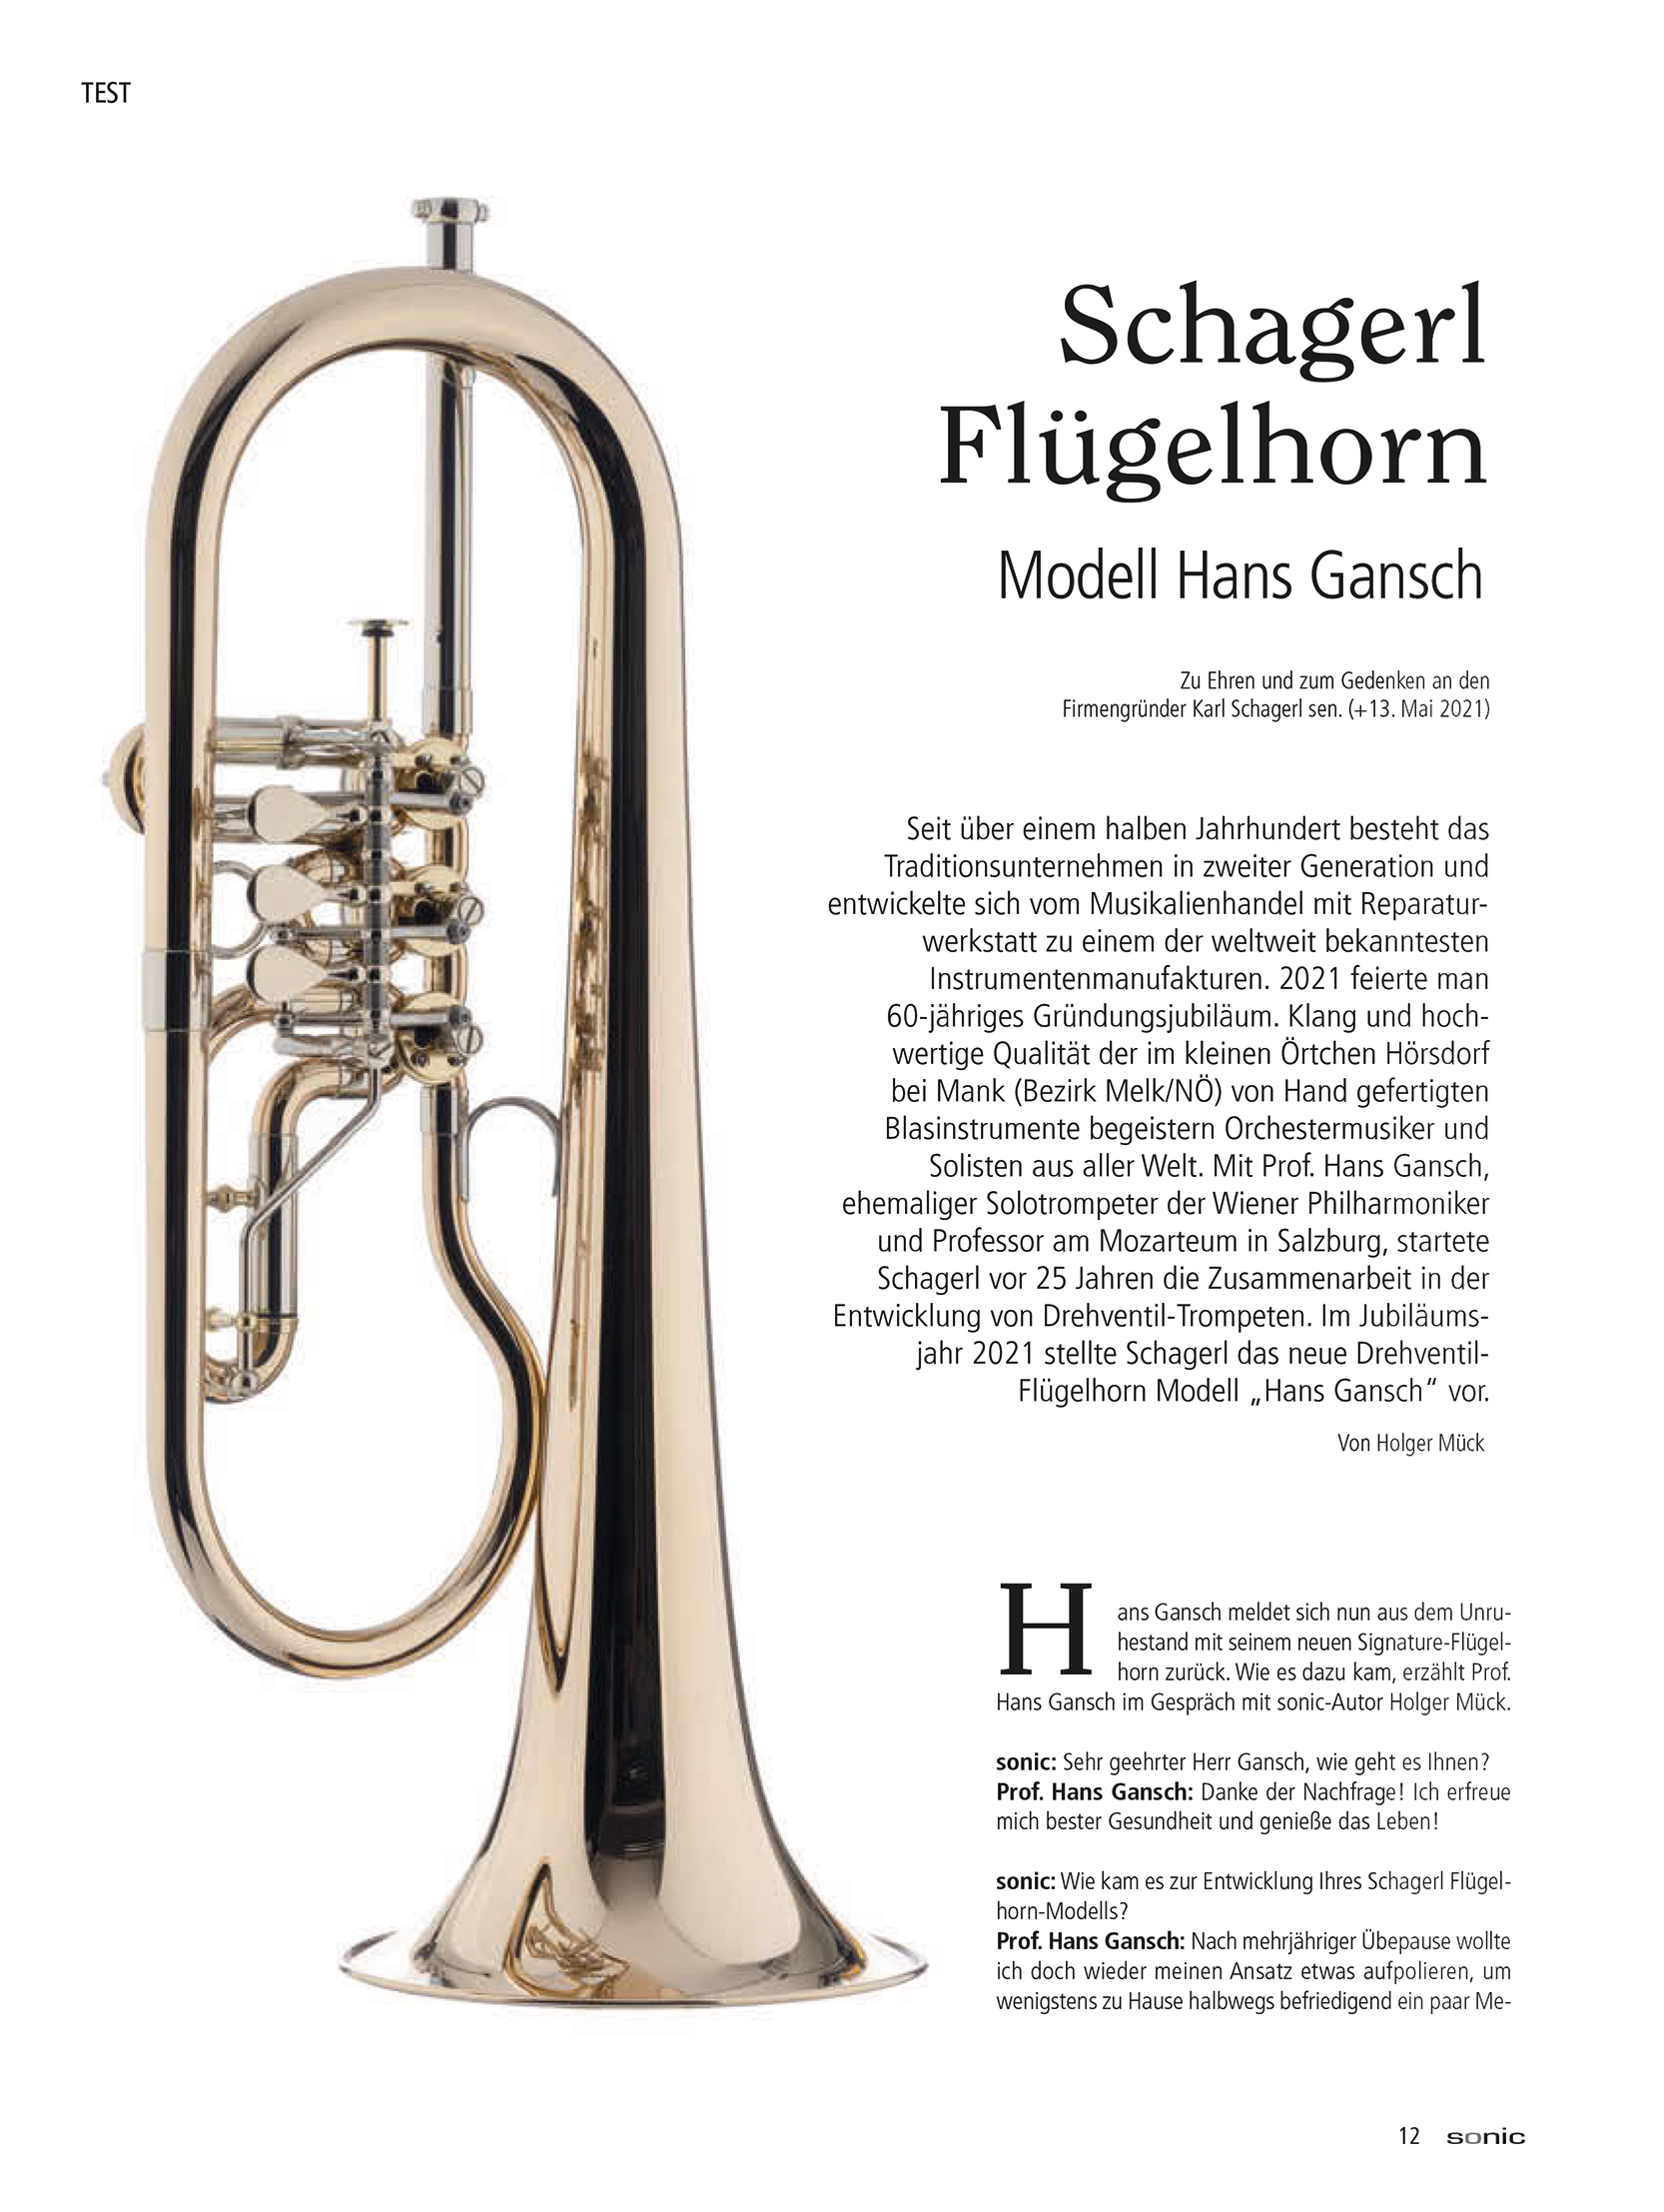 Schagerl Flugelhorn – Model Hans Gansch Schagerl Artist